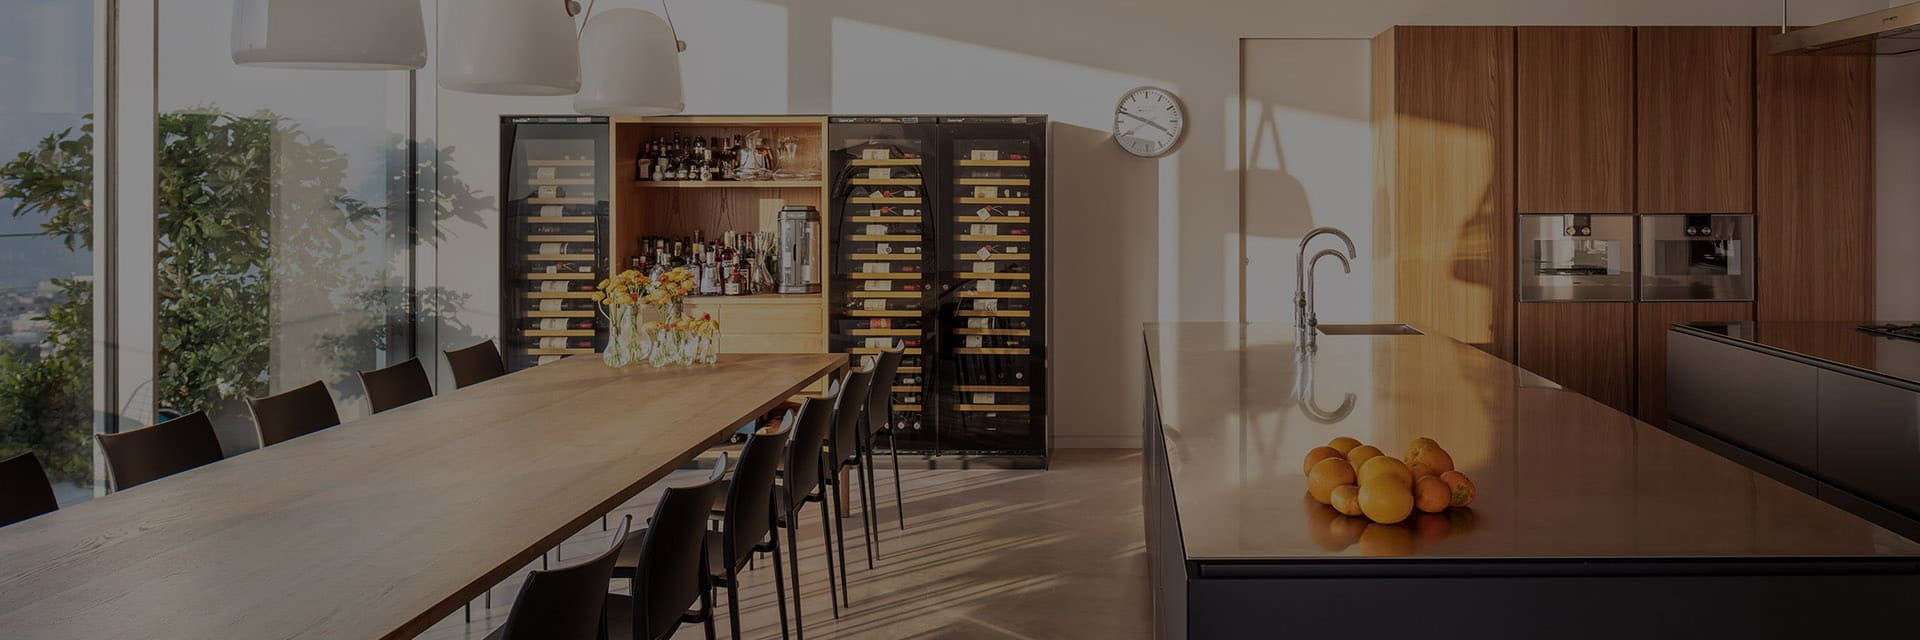 Innenarchitektur – Mehrere Weinkhülschränk, integriert in einen maßgefertigten Schrank in der offenen Küche, wodurch ein schöner Empfangsbereich entsteht. Wie man Alterung und Service vereint.